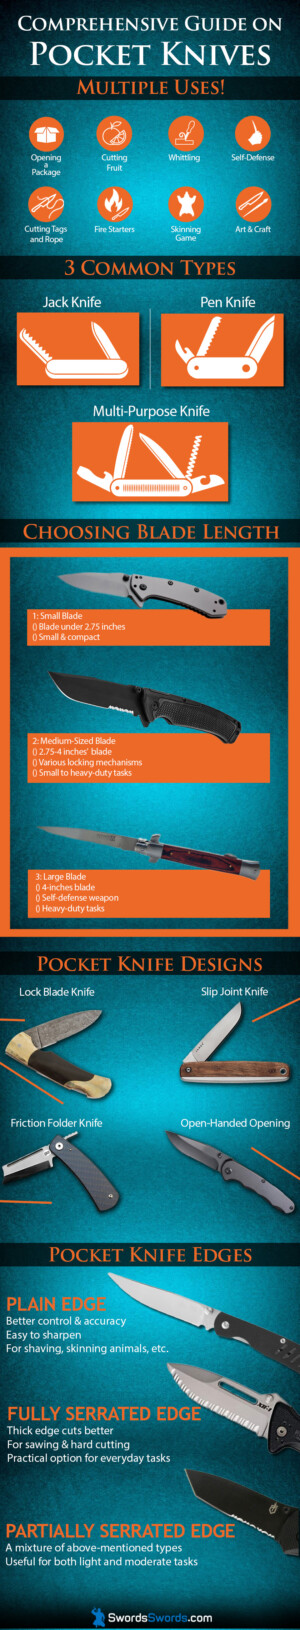 A Comprehensive Guide on Pocket Knives